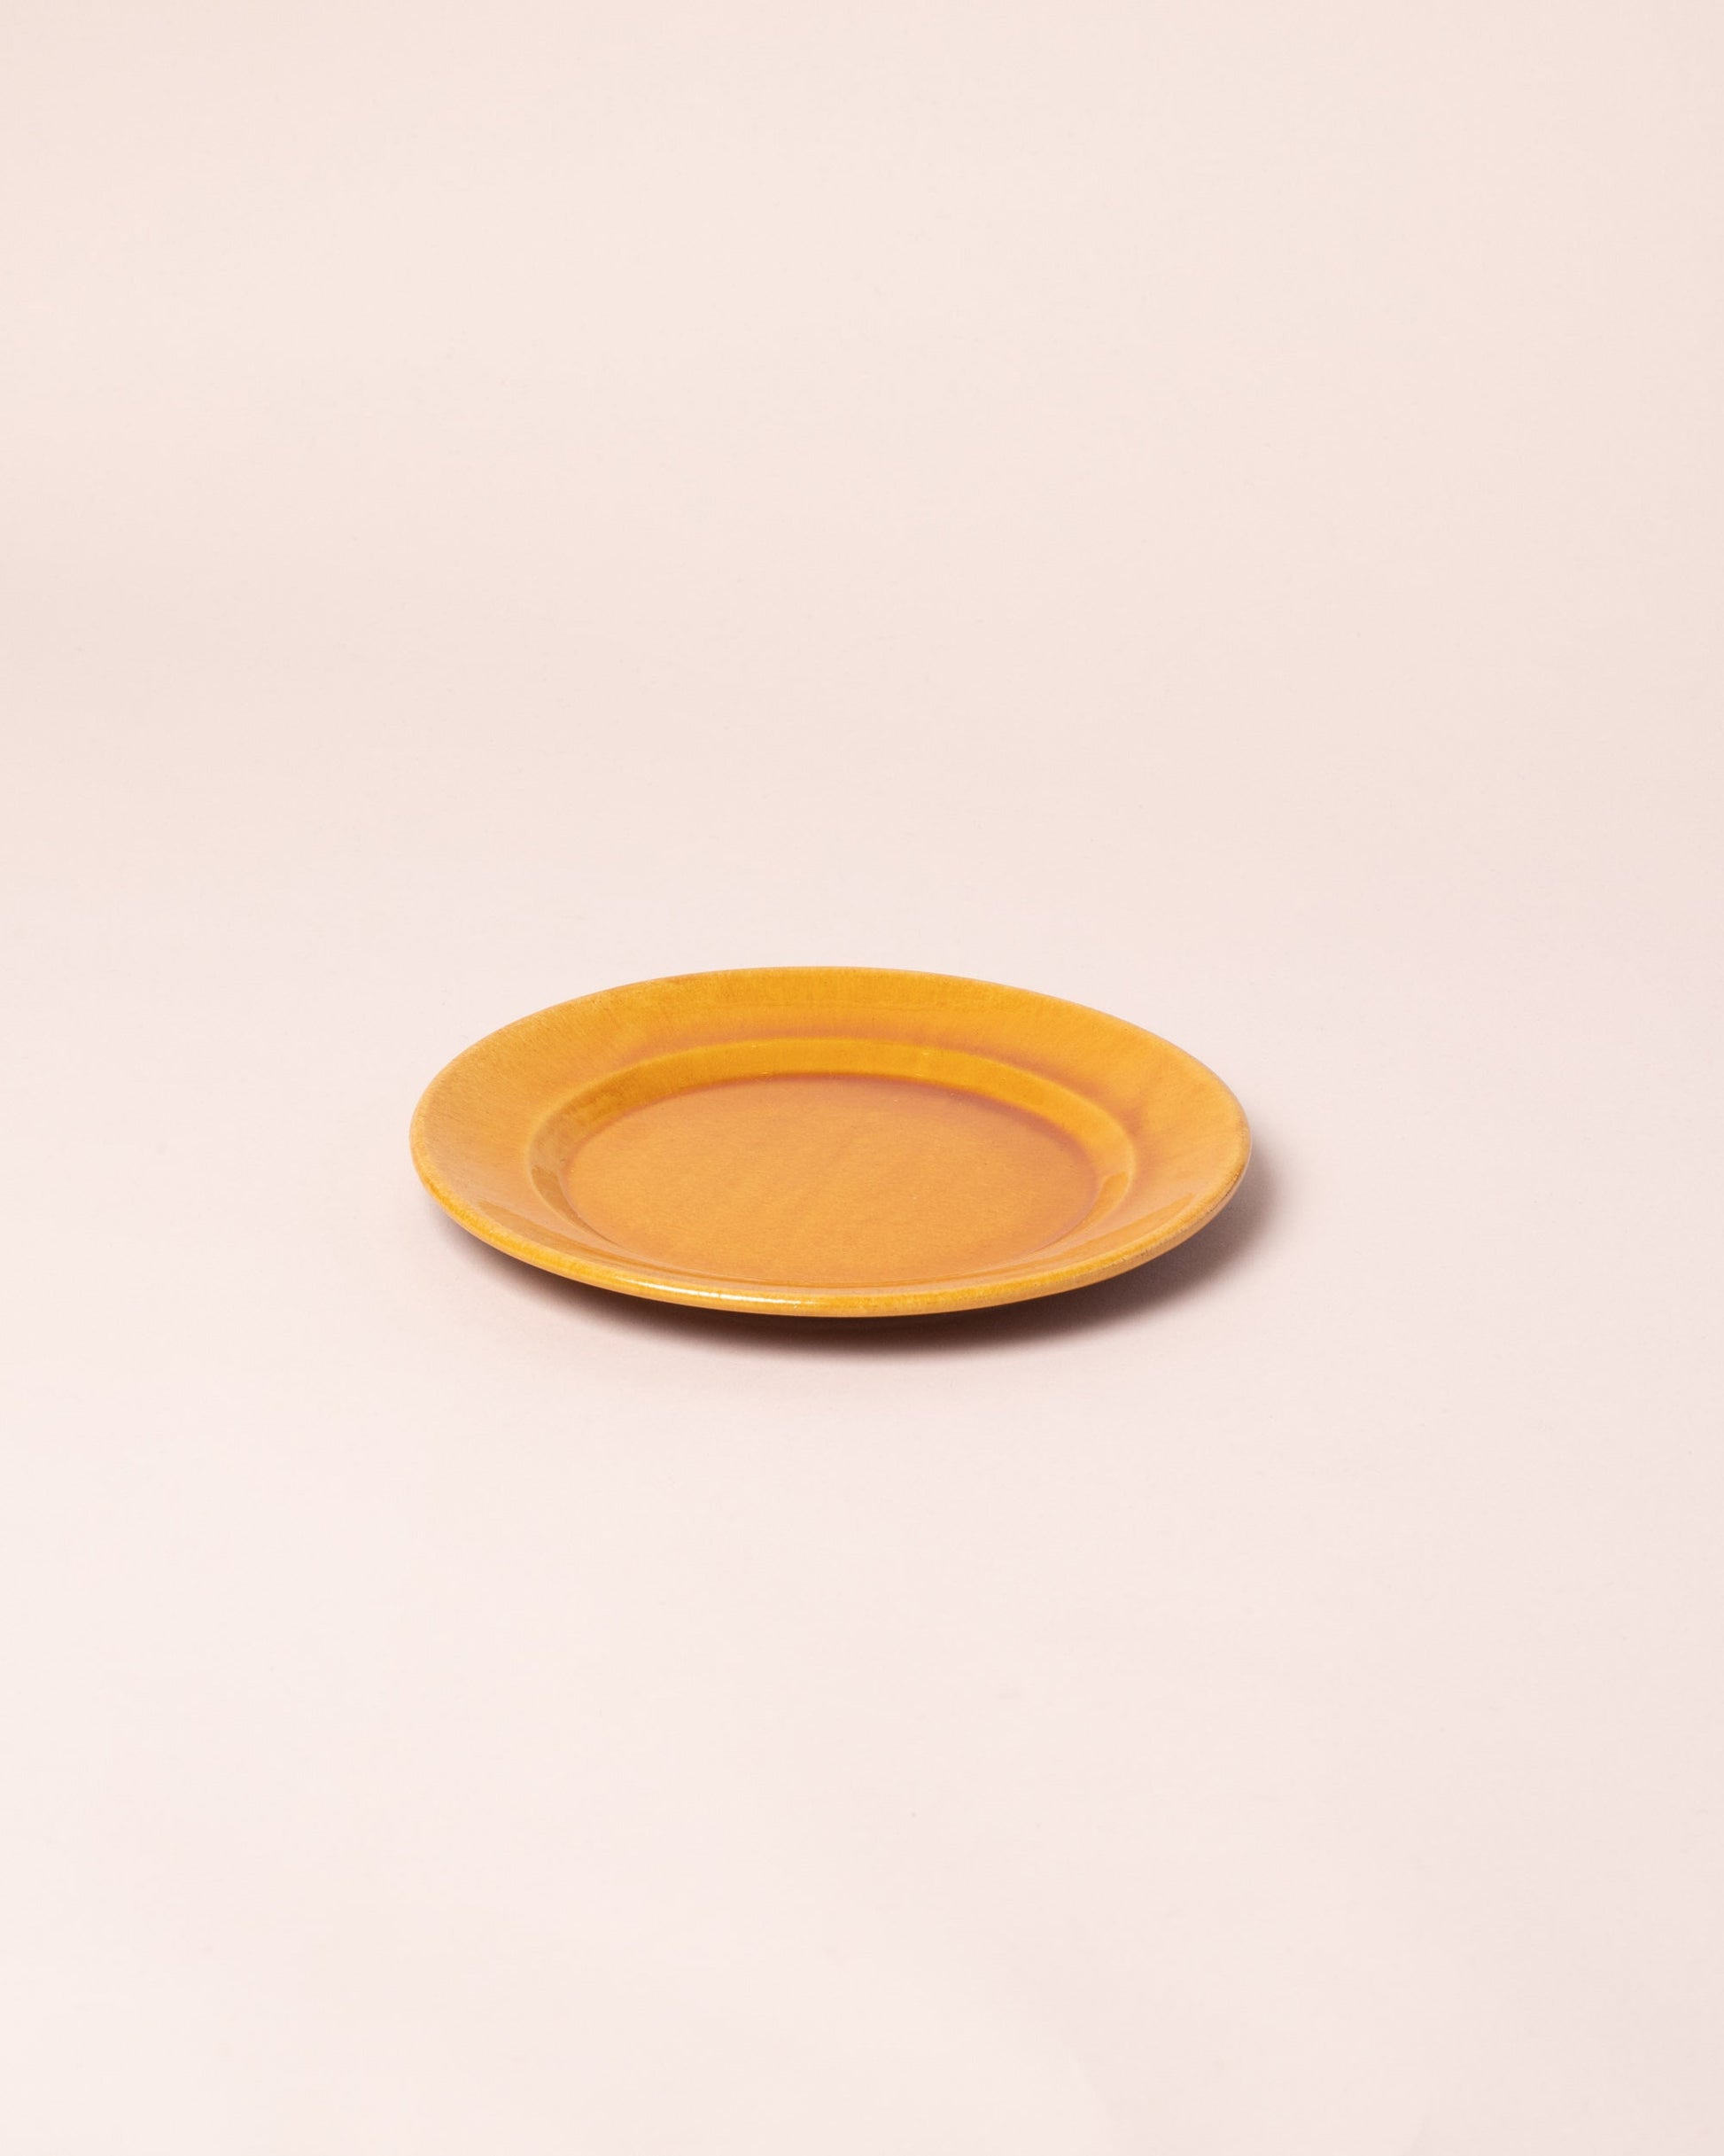 La Ceramica Vincenzo Del Monaco Caramel Yellow Small Dish on light color background.